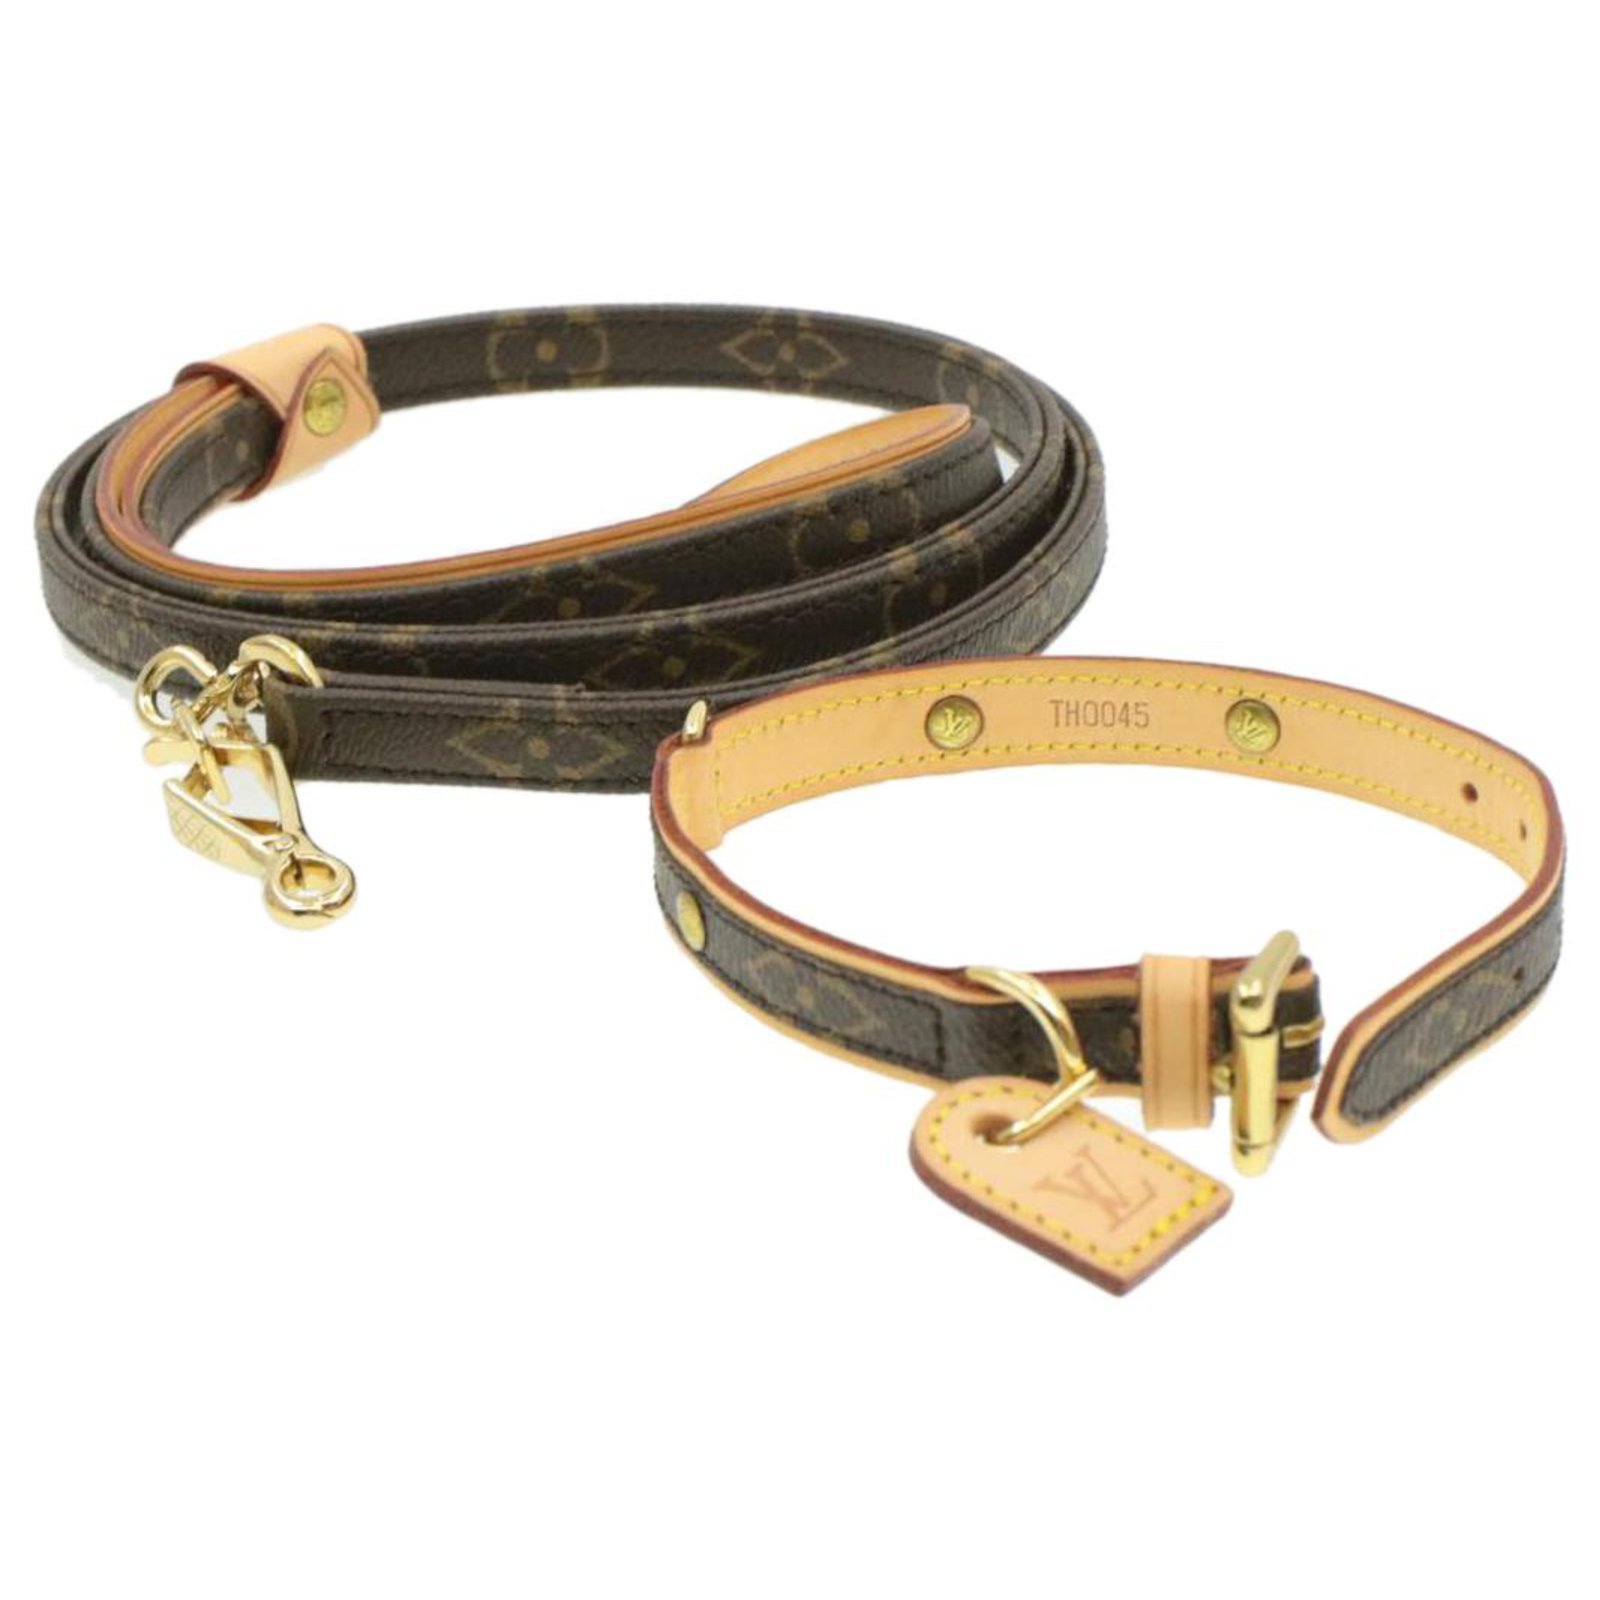 Louis Vuitton Baxter PM Hundehalsband & MM Hundescheine Set unbenutzt  SL0064 CV1189